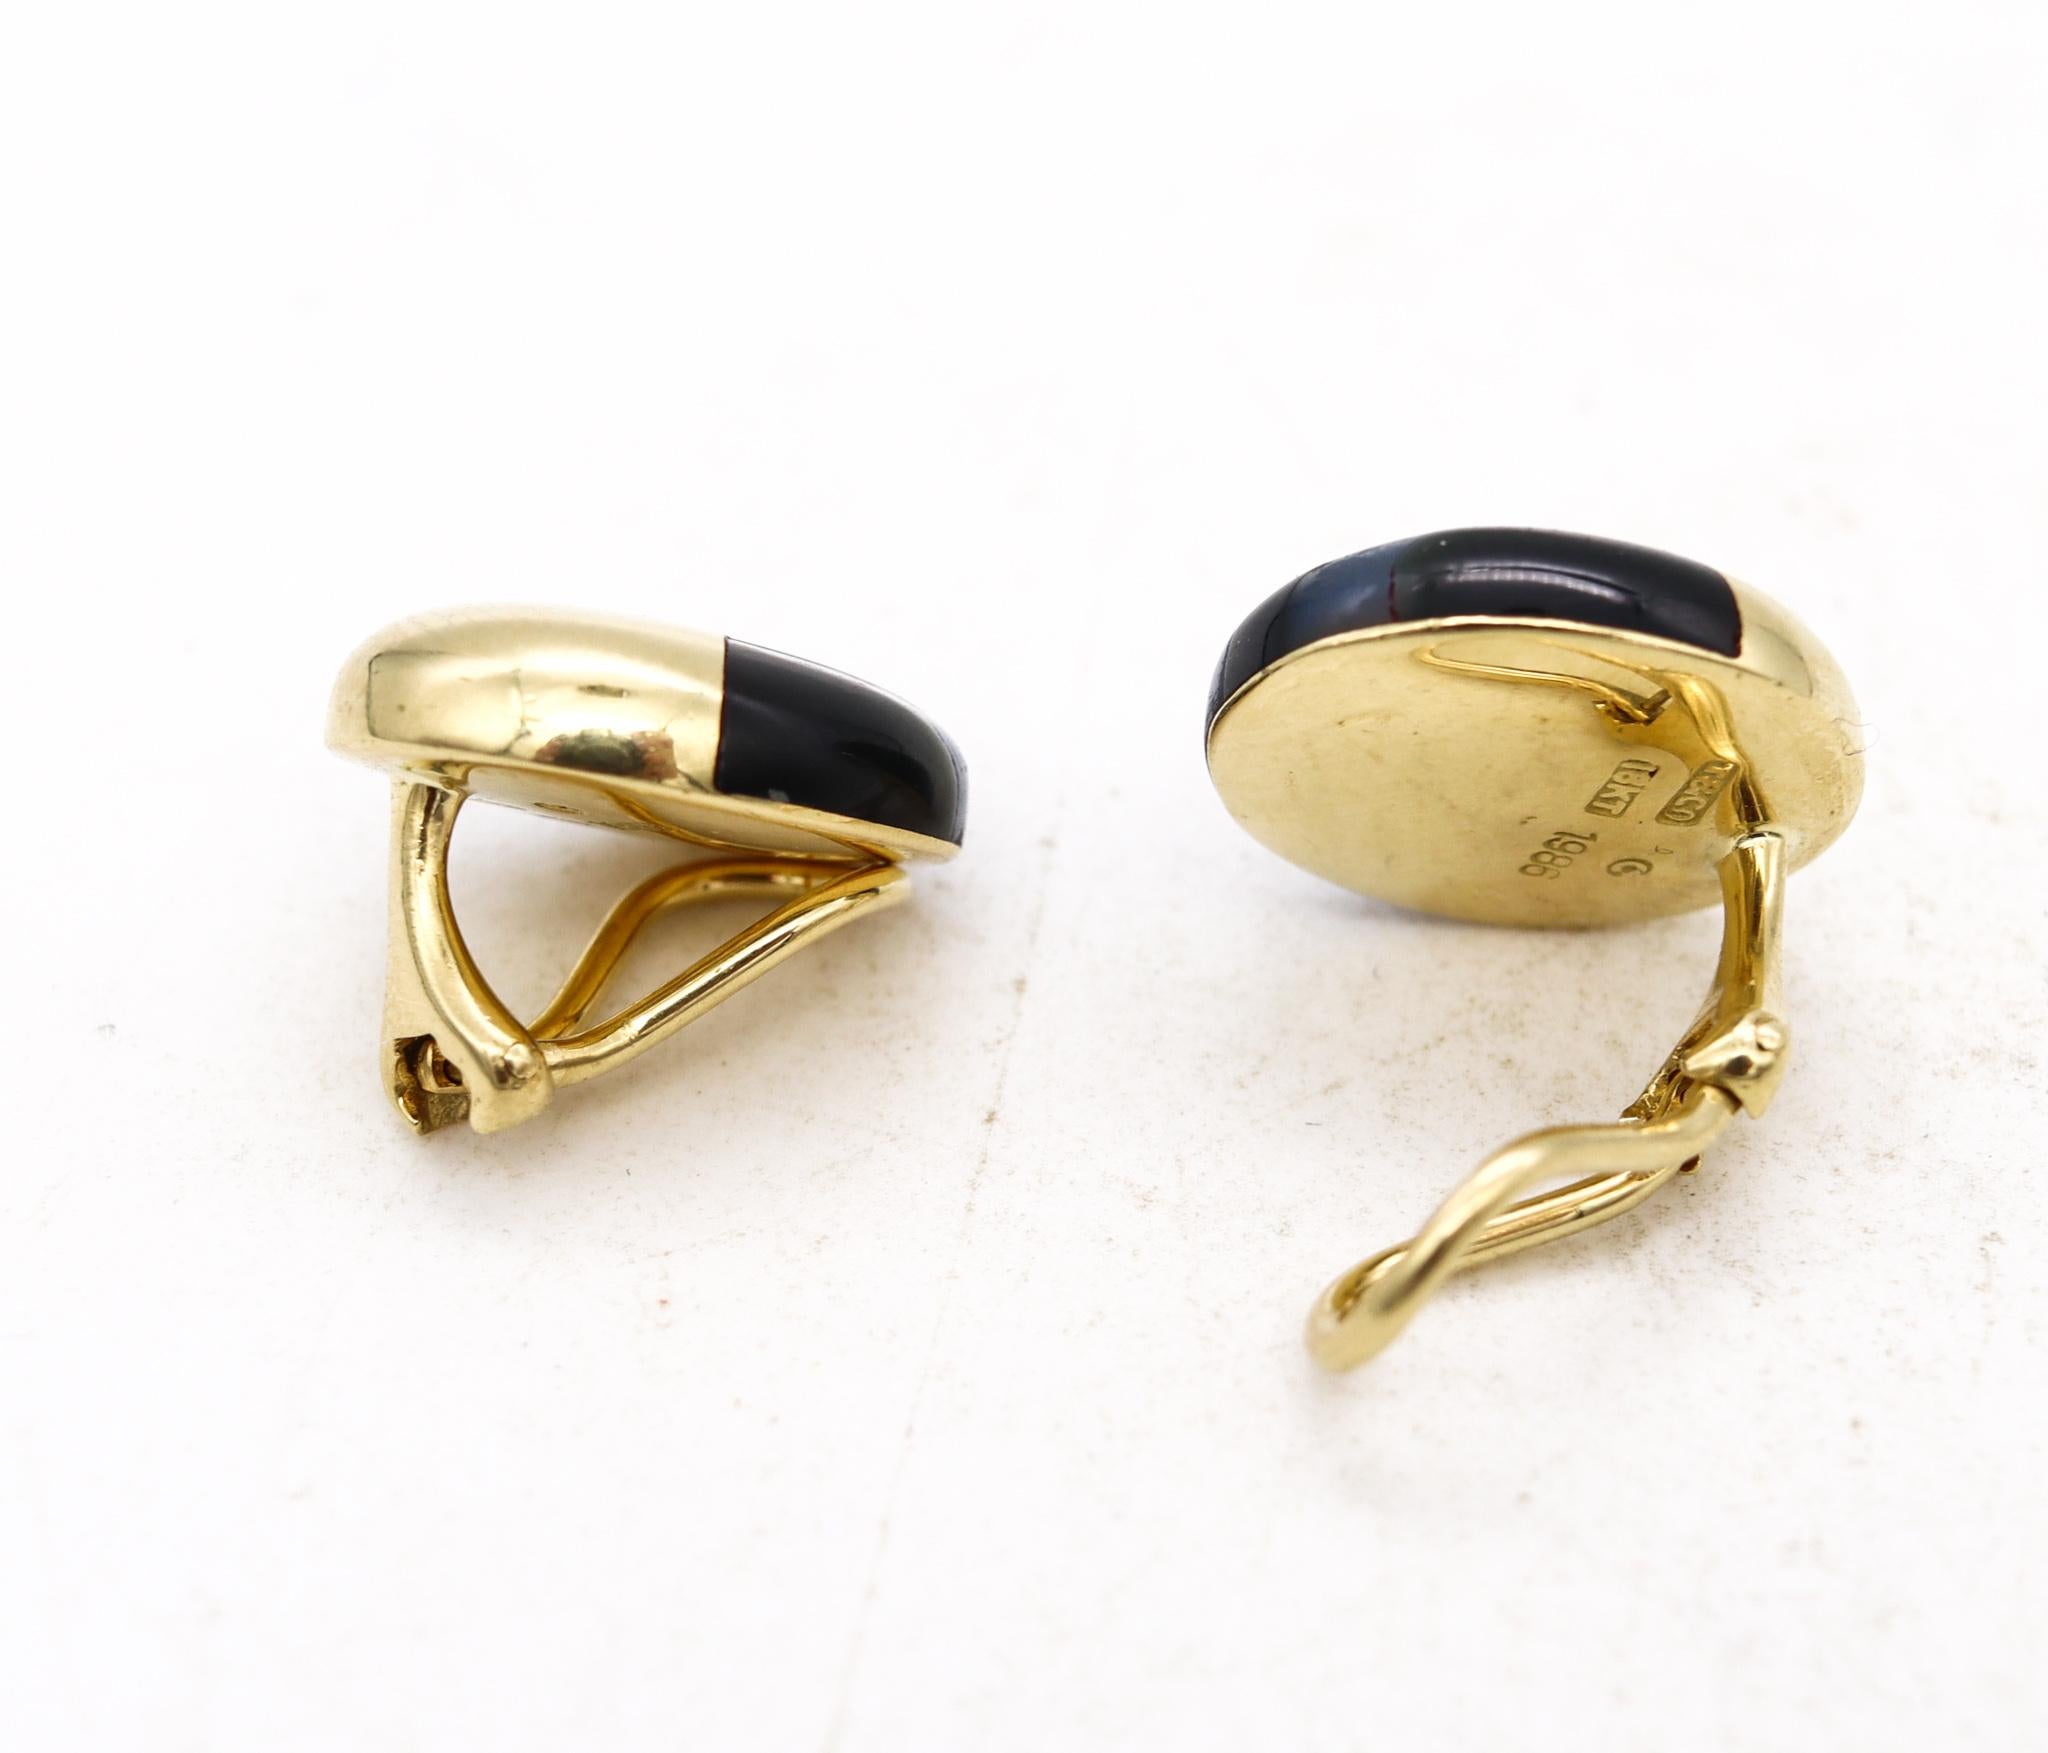 Geometrische Clip-Ohrringe, entworfen von Angela Cummings für Tiffany & Co.

Vintage Oval Paar von Cummings in den Tiffany & Co Studios in New York, zurück in den späten 1980er Jahren erstellt. Sie sind sorgfältig aus massivem 18-karätigem Gelbgold